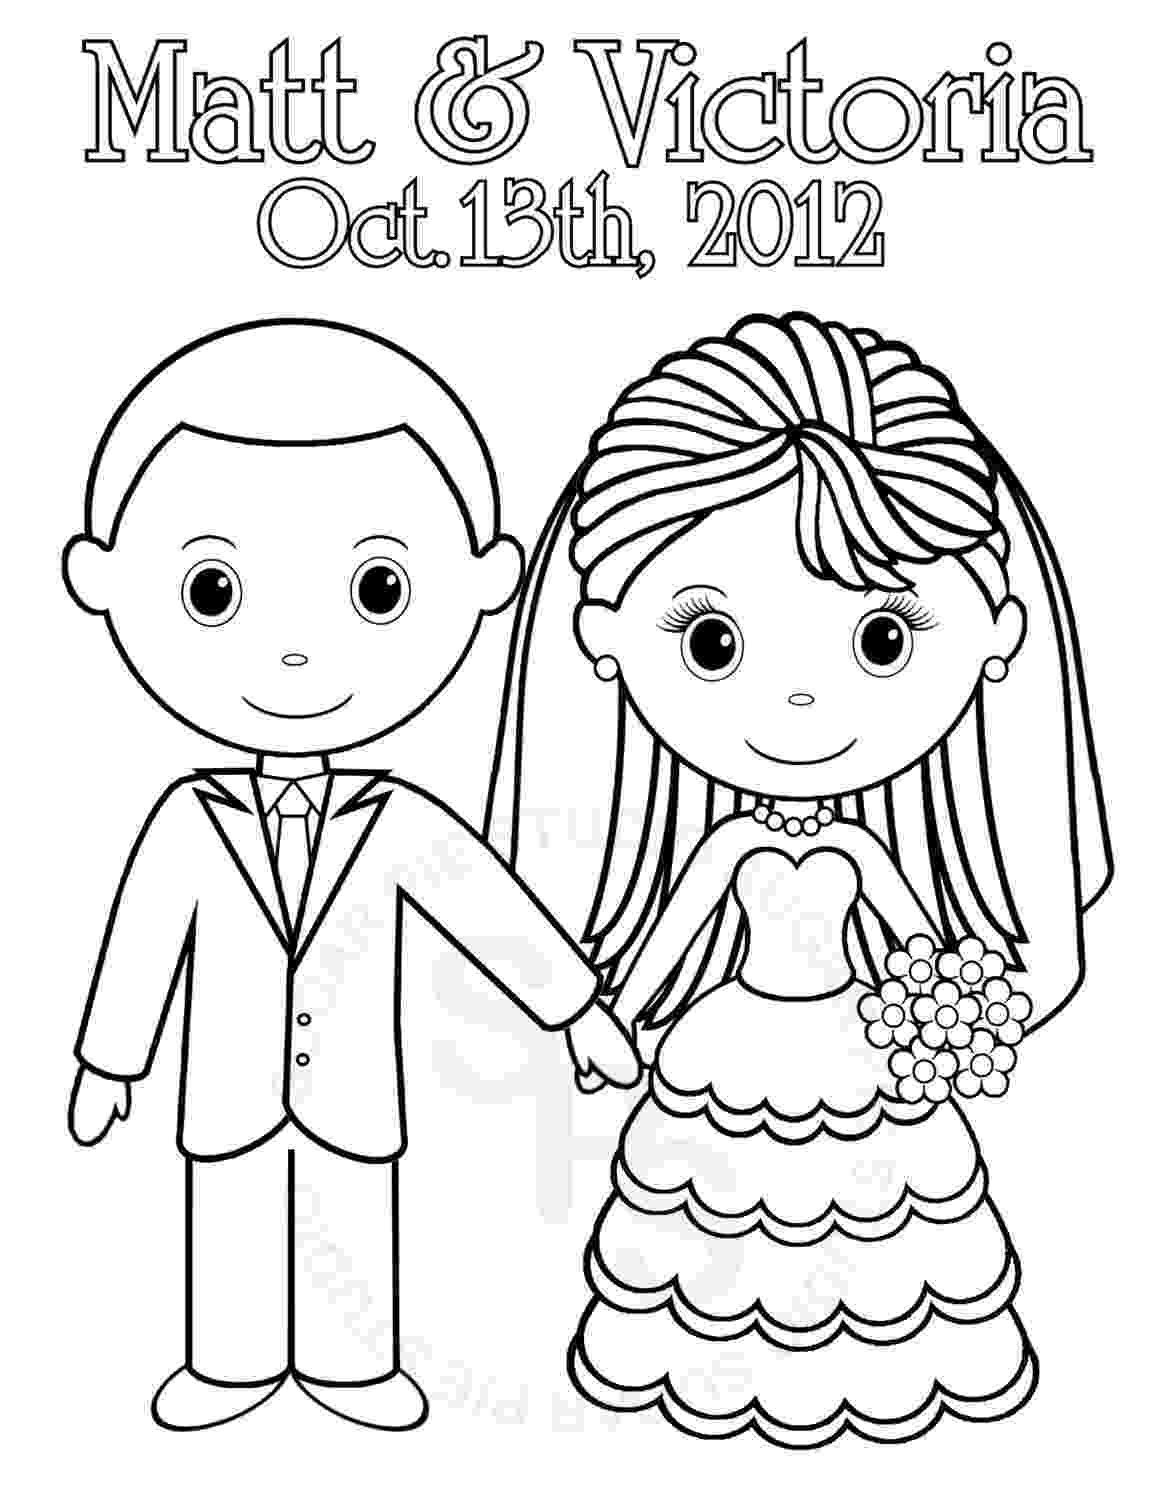 bride coloring page bride coloring pages coloring pages to download and print page coloring bride 